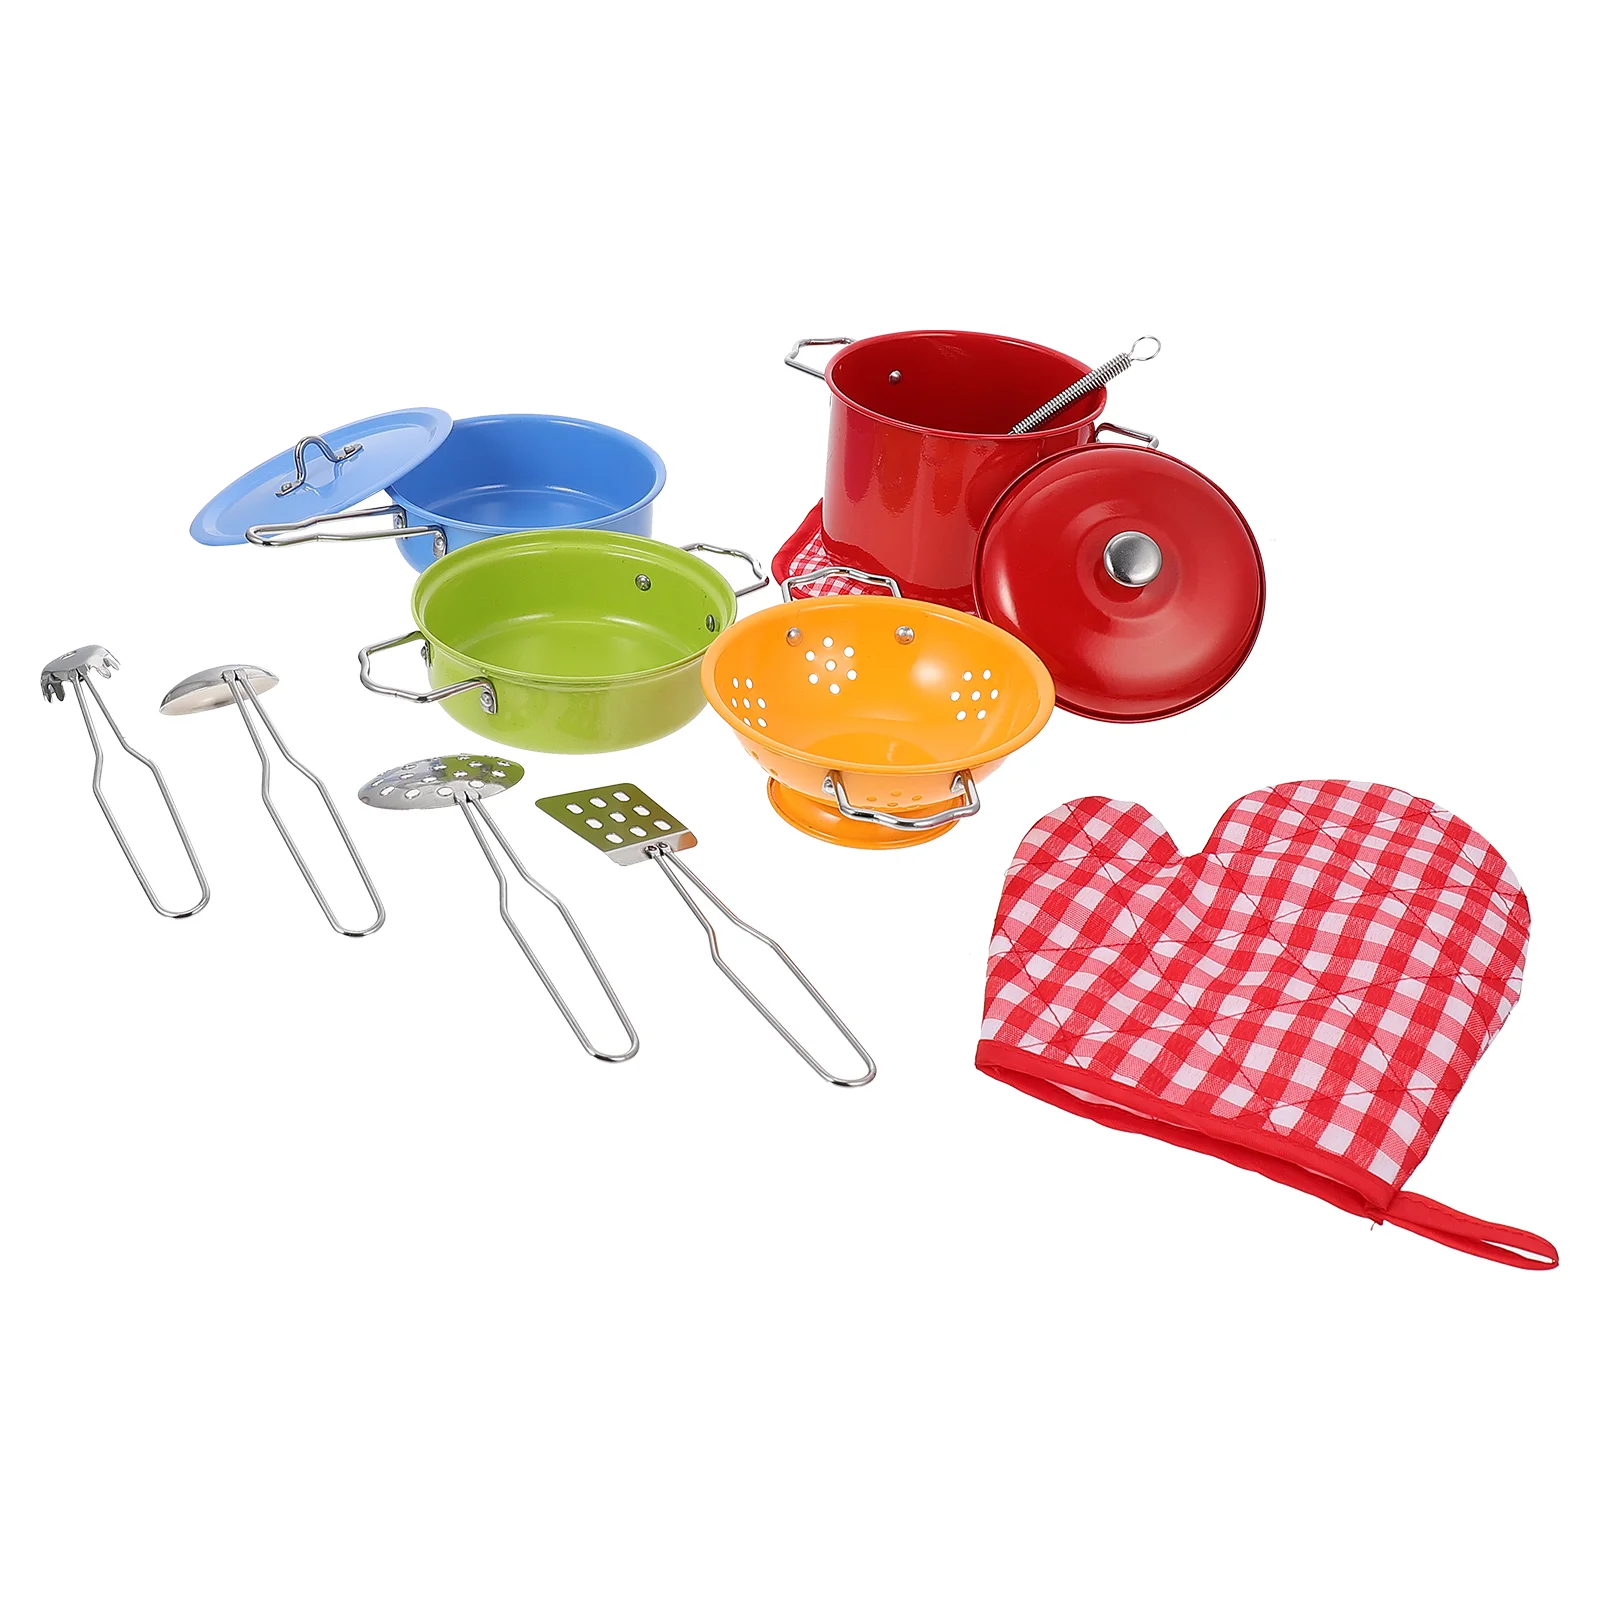 

Кухонная игрушка, имитация кухонной посуды, детский набор для приготовления пищи, игрушечный горшок, мини-игрушки, лопаточка для дома, сково...